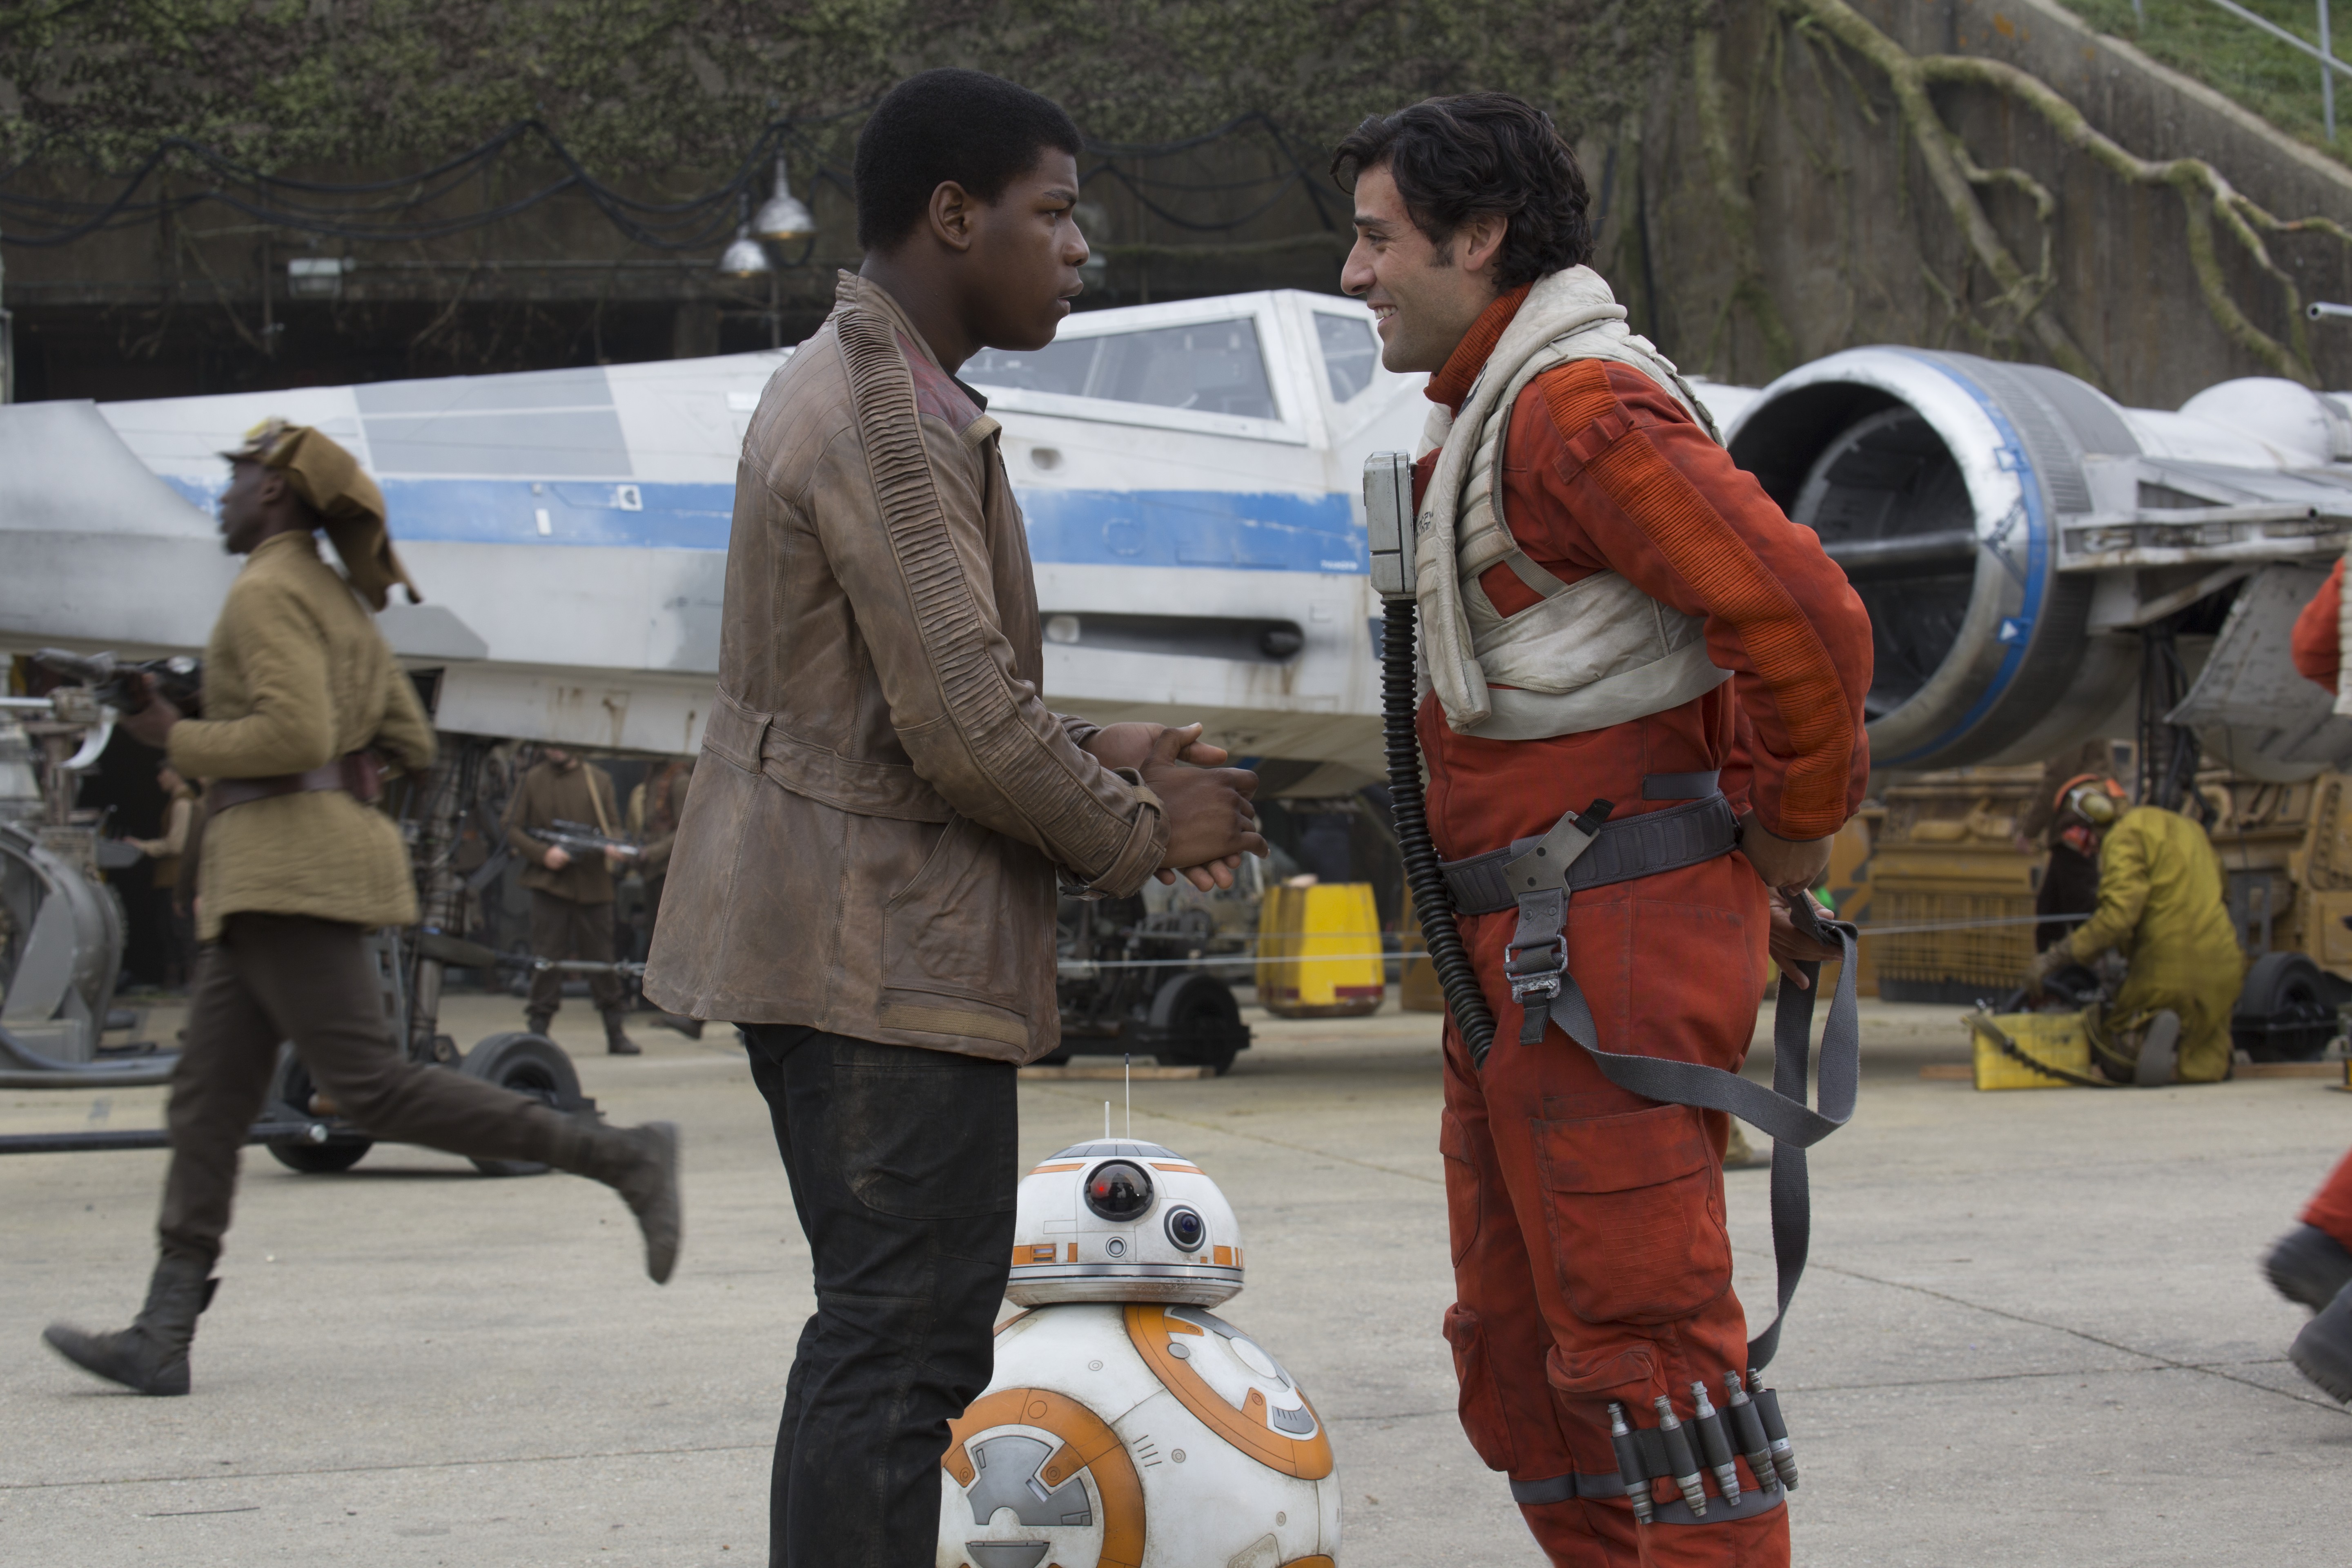 Bb 8 Finn Star Wars John Boyega Oscar Isaac Poe Dameron Star Wars Star Wars Episode Vii The Force Aw 5760x3840